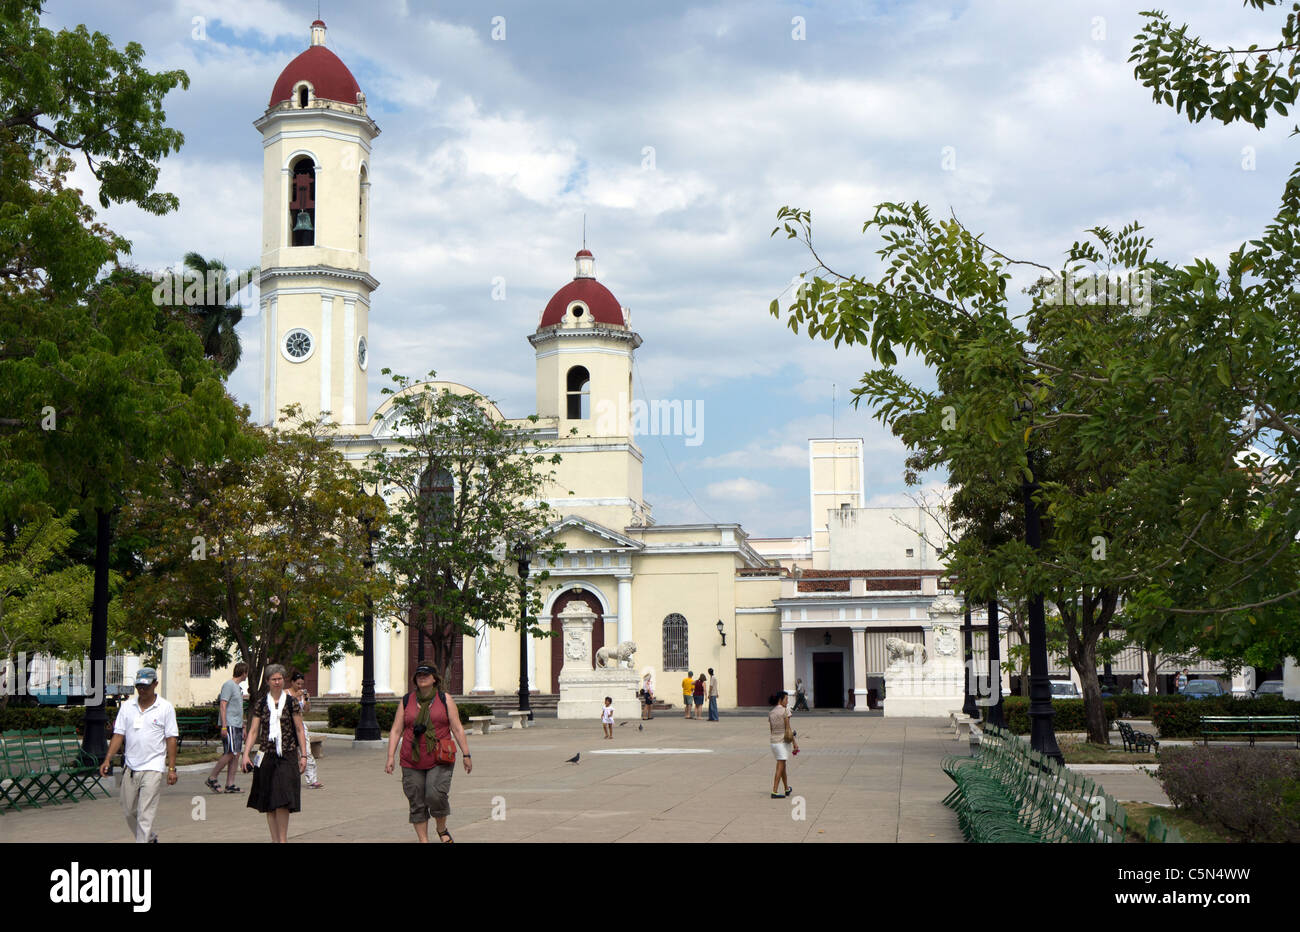 Cathedral de la Purisma Concepcion, viewed across Marti Park, Cienfuegos, Cuba Stock Photo